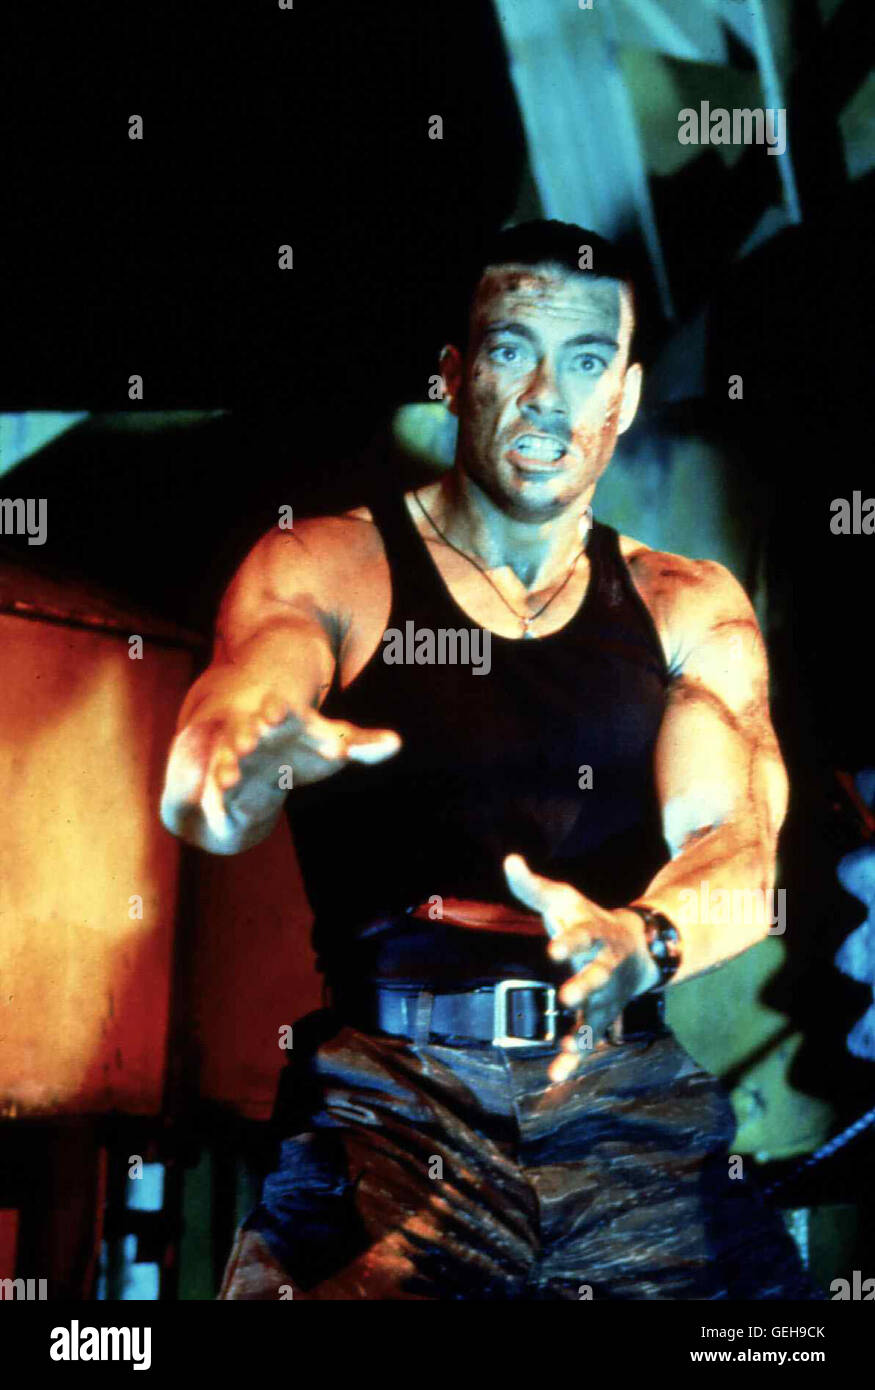 Jean-Claude Van Damme Als Chad (Jean-Claude Van Damme in Doppelrolle)  Erfaehrt, Dass er Einen Zwillingsbruder in Hong Kong hat, Reist er  grundierten. Gemeinsam Wollen Sie Den Tod Ihrer Eltern Raechen, sterben Vor